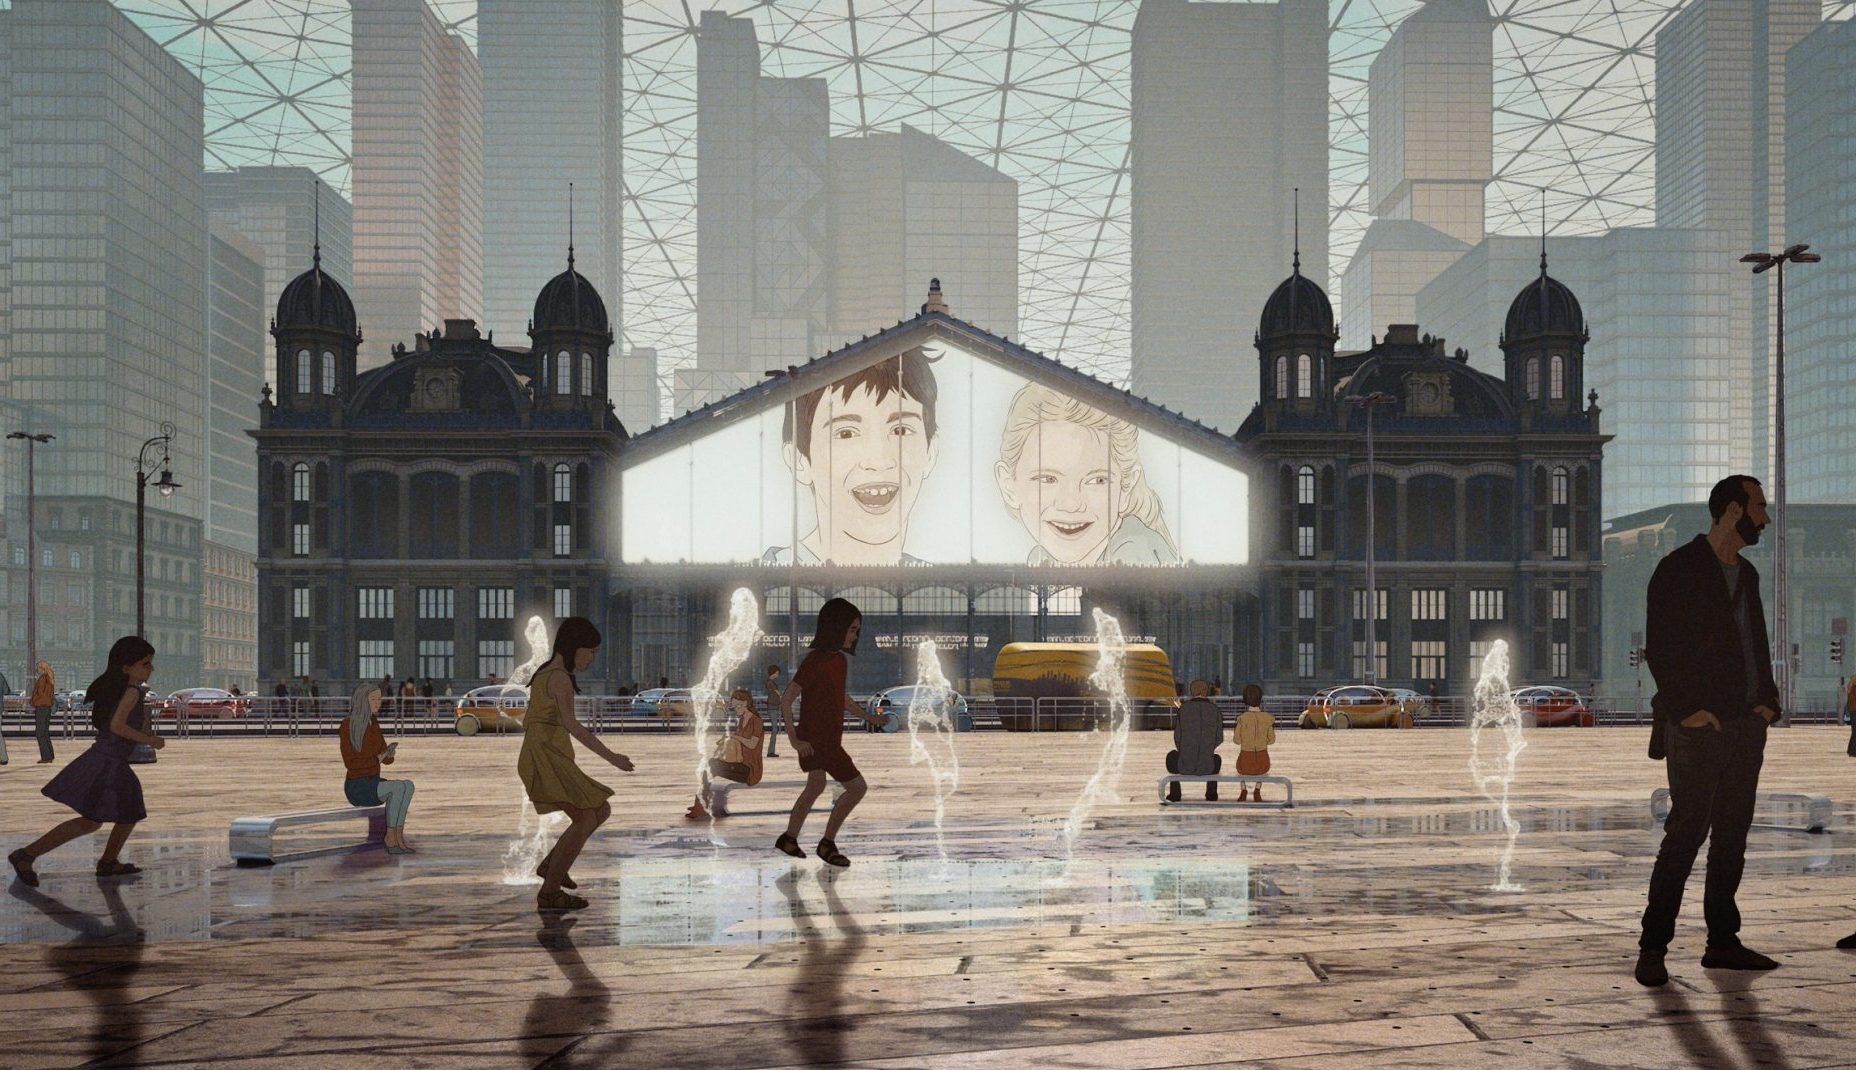 Ungarischer Animationsfilm als bester Film beim Filmfestival in Straßburg ausgezeichnet